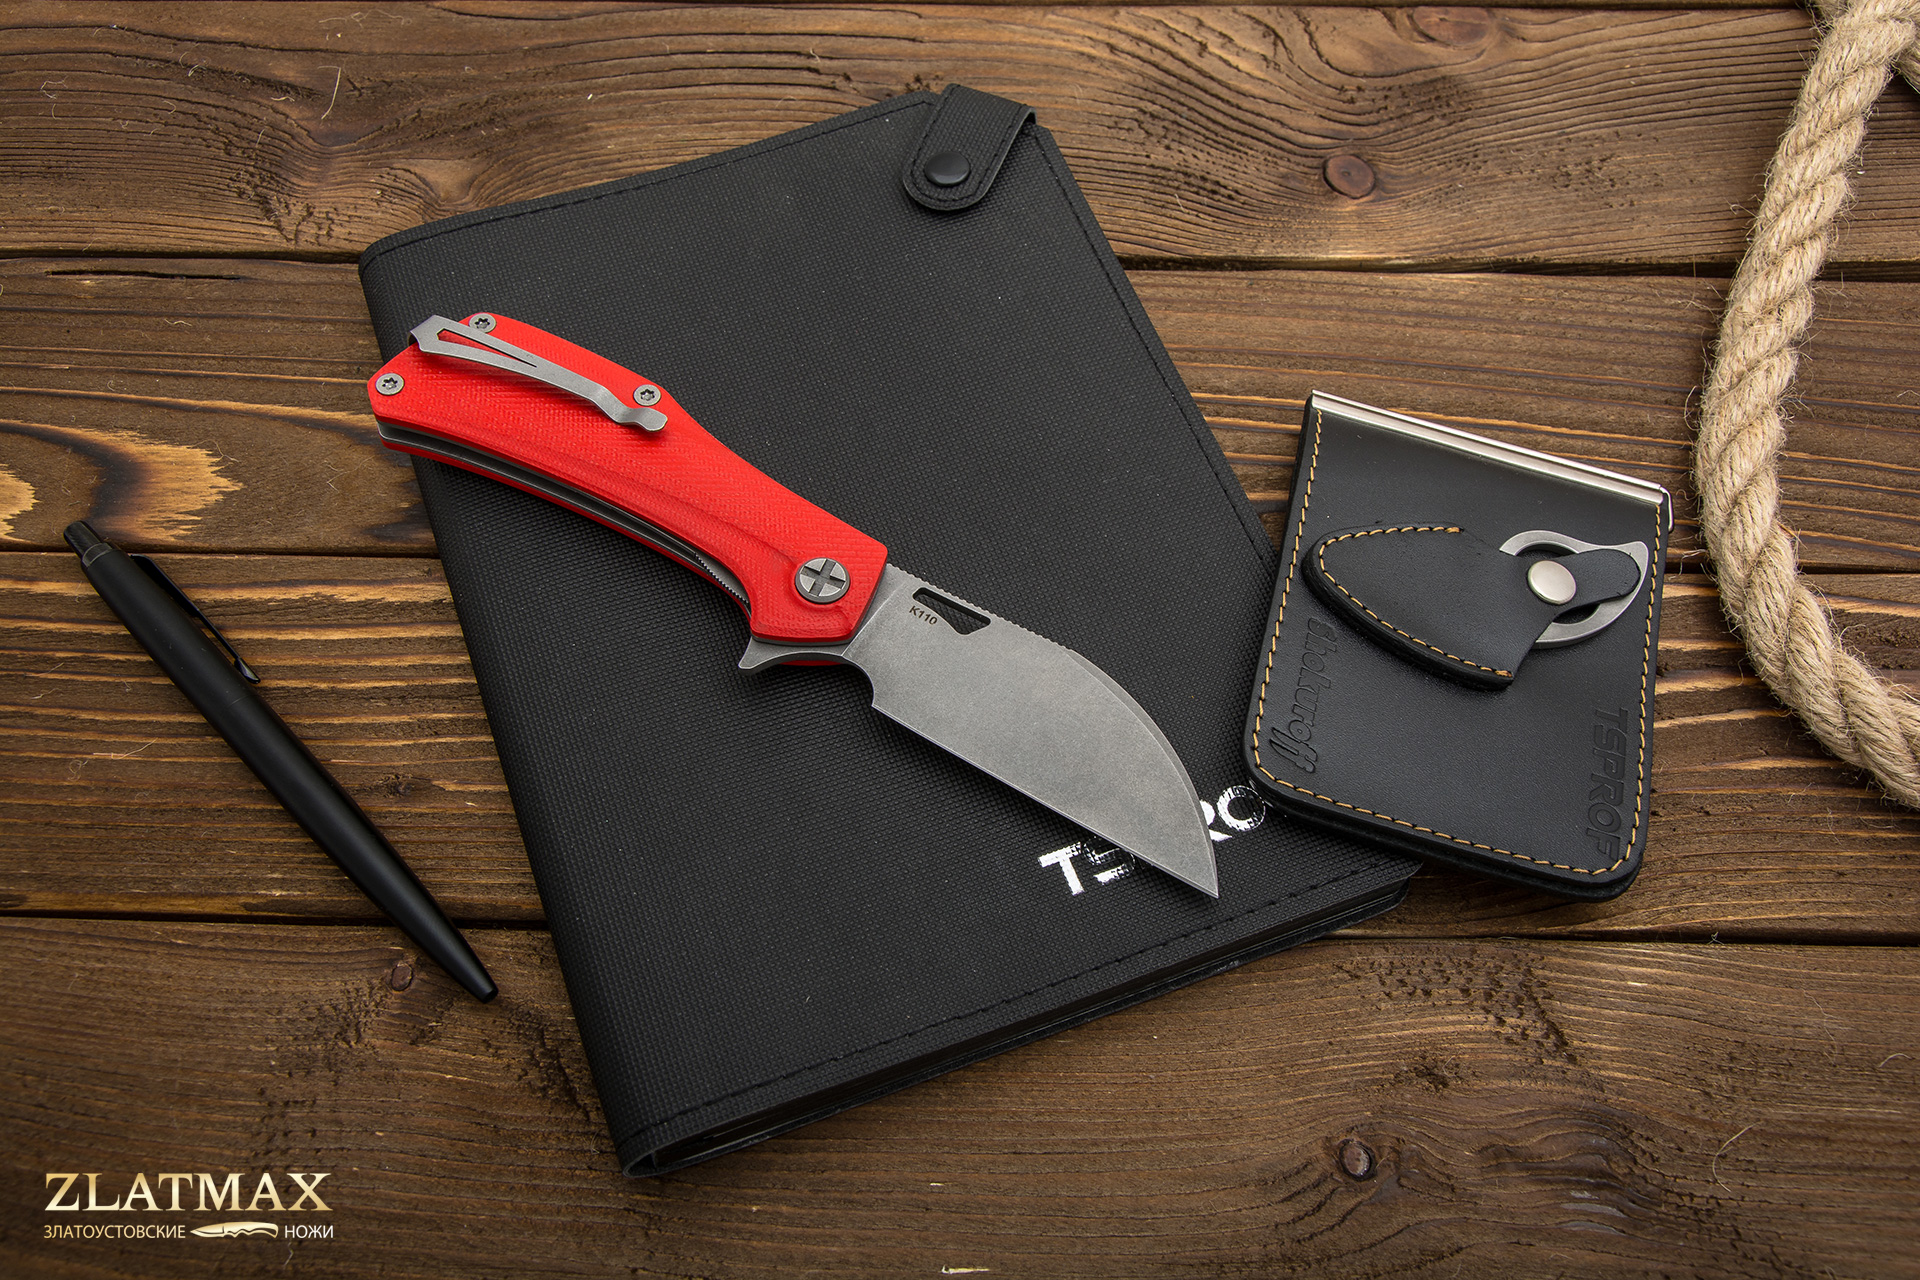 Нож Складной Скорпион WHARNCLIFFE (K110 Böhler, Накладки G10 Красный, Обработка клинка Stonewash)